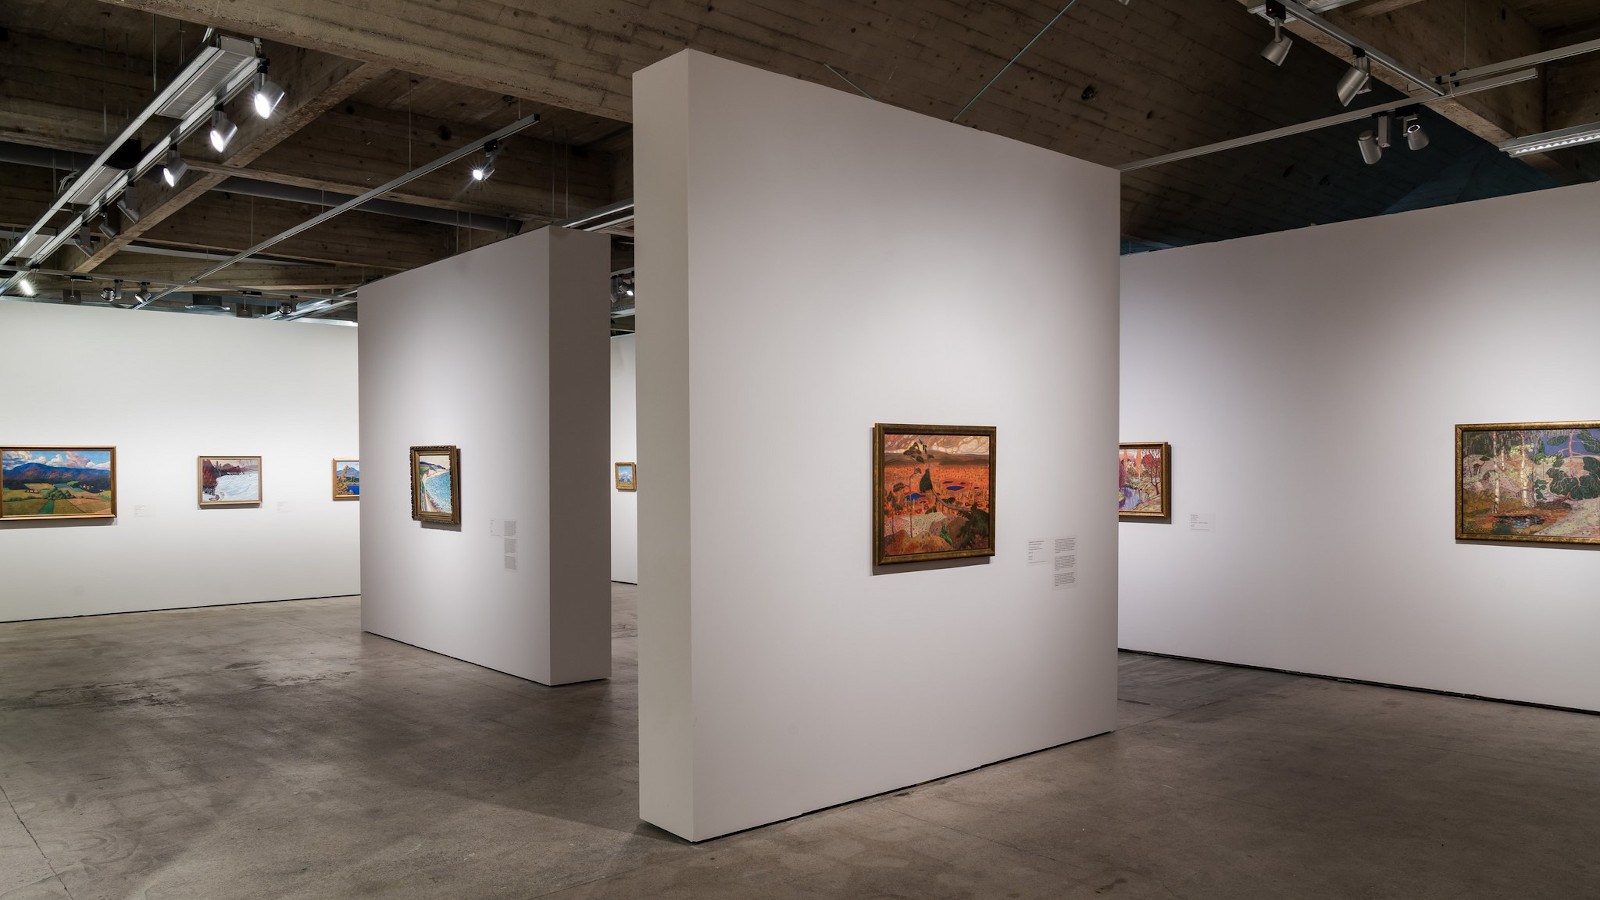 Konrad Mägi, Maalauksen arvoitus -näyttely EMMA – Espoon modernin taiteen museossa on esillä 29.9.2021–23.1.2022.